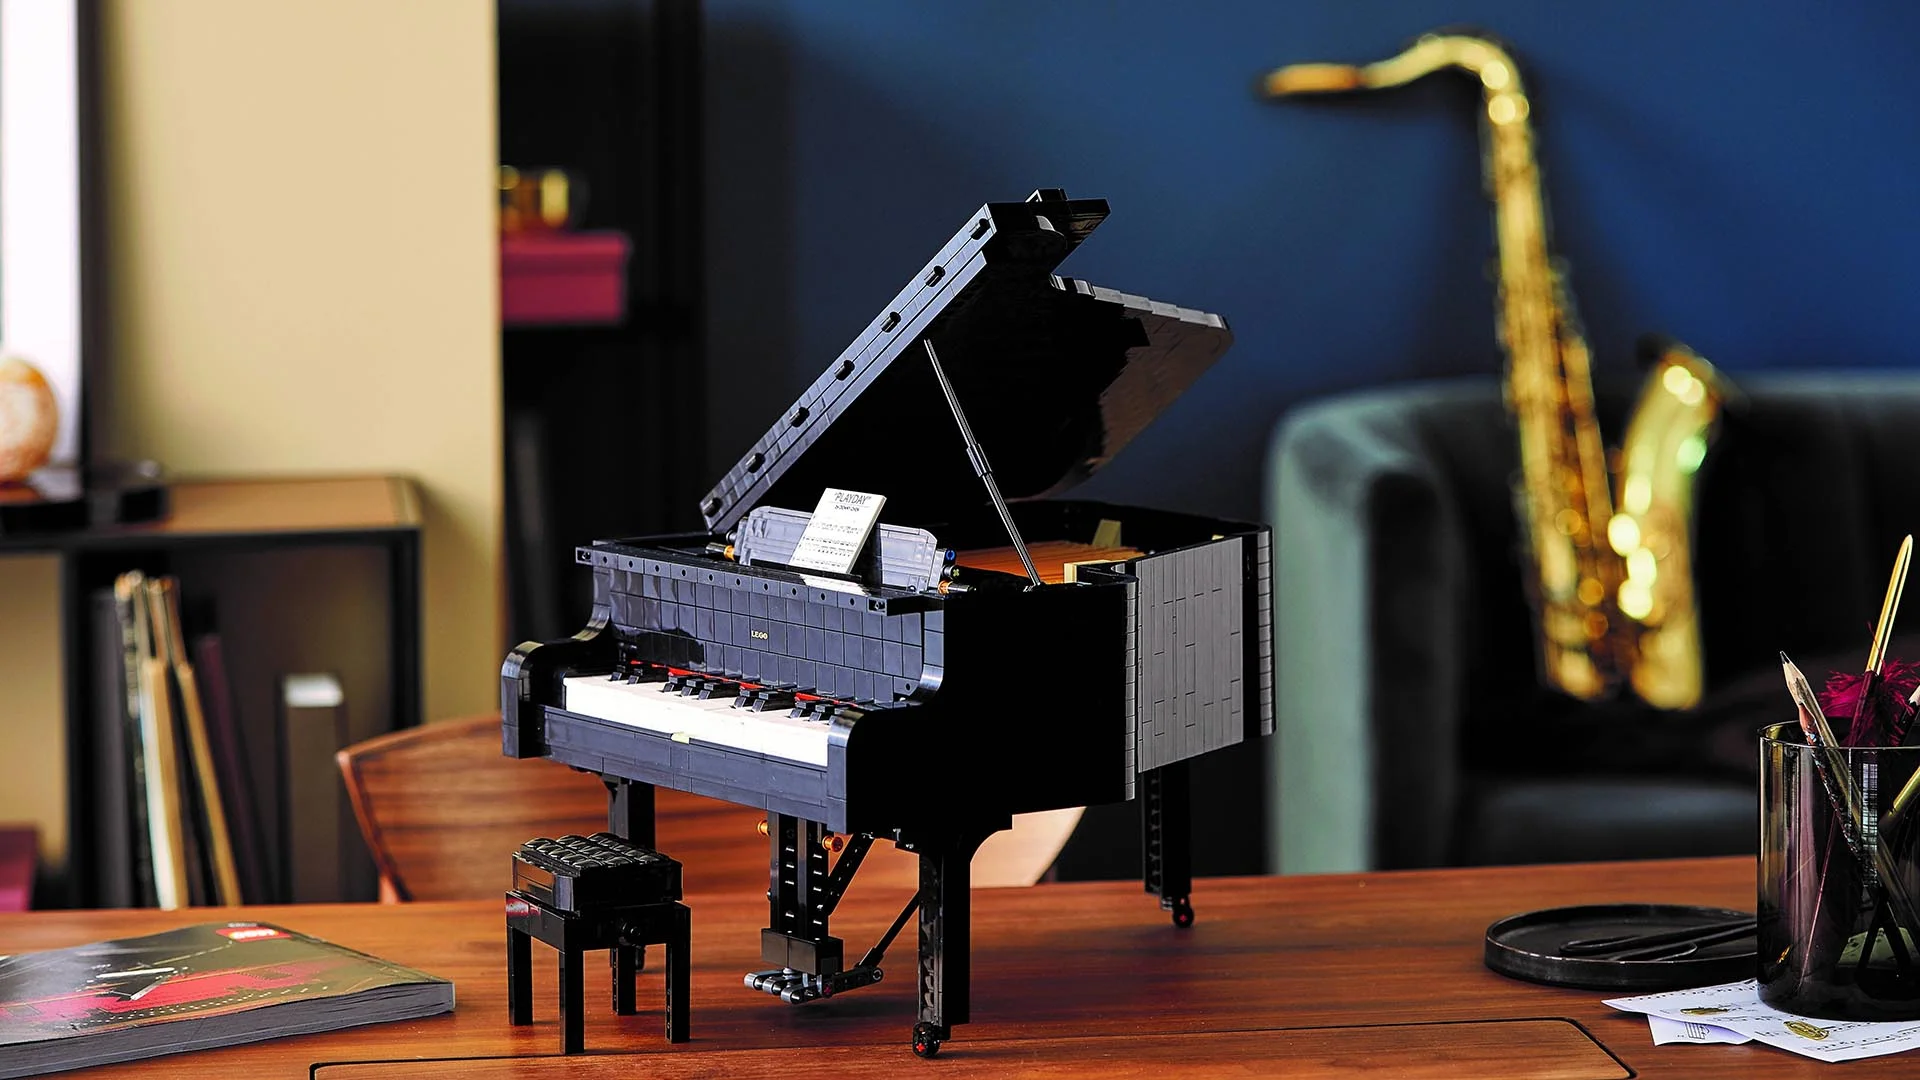 Компания Lego выпускает конструктор для взрослых, увлекающихся музыкой - фото 486092